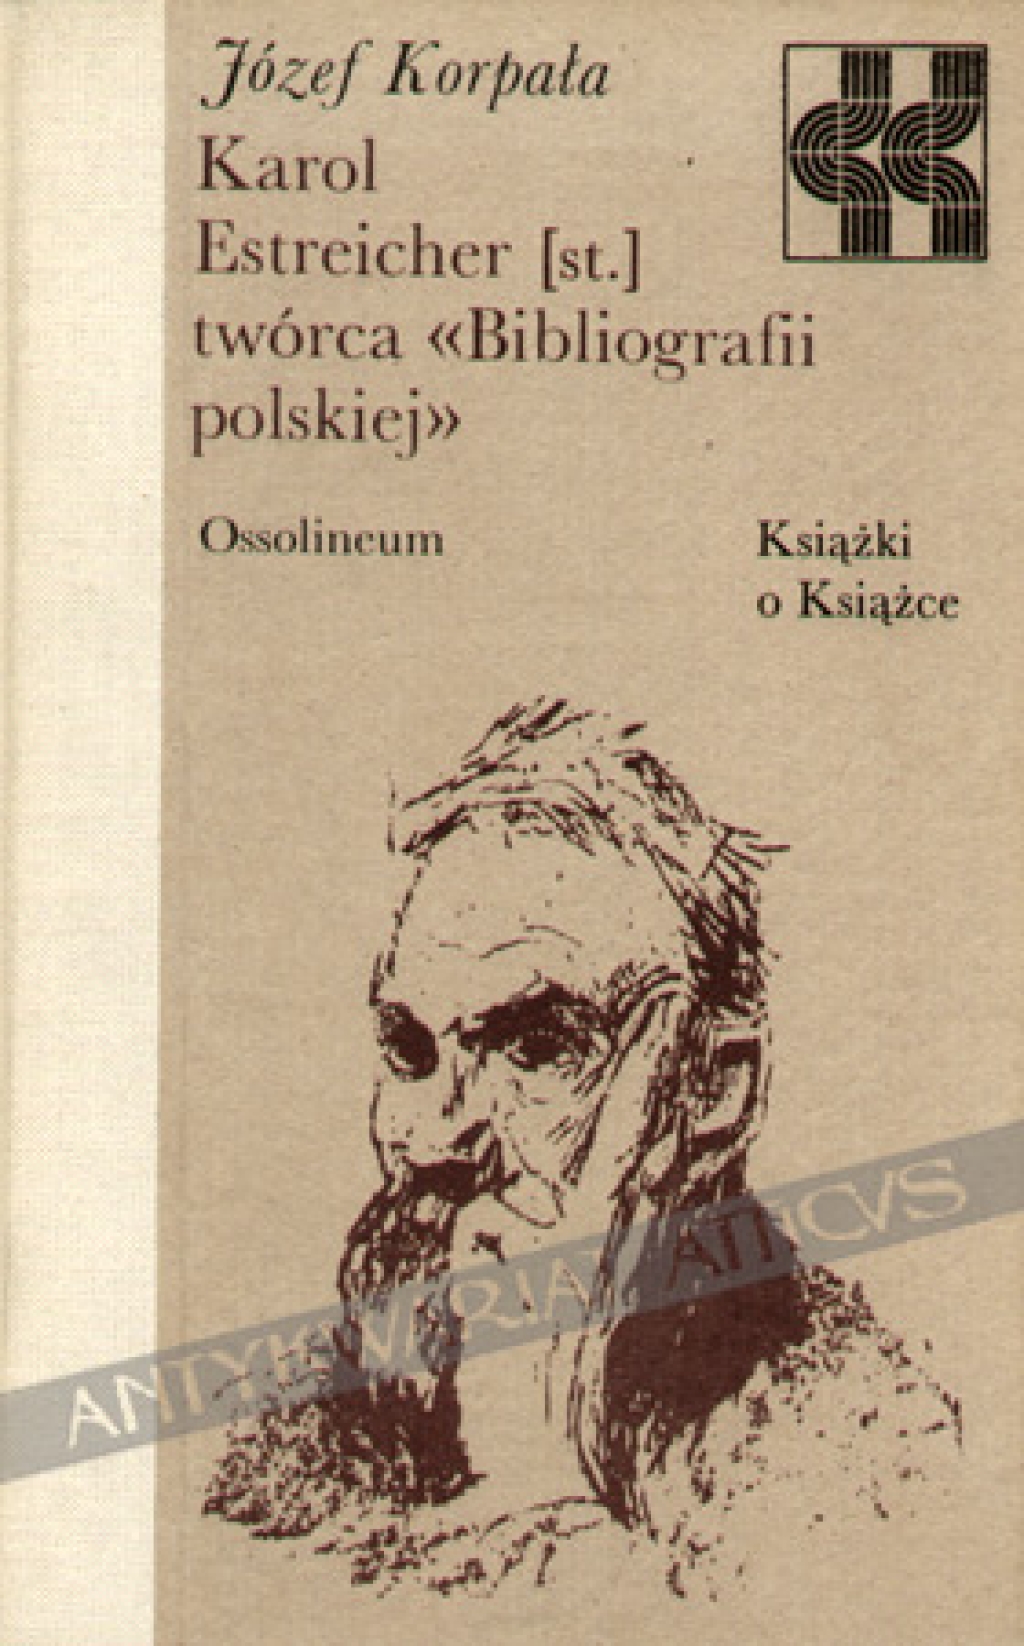 Karol Estreicher (st.) twórca Bibliografii polskiej